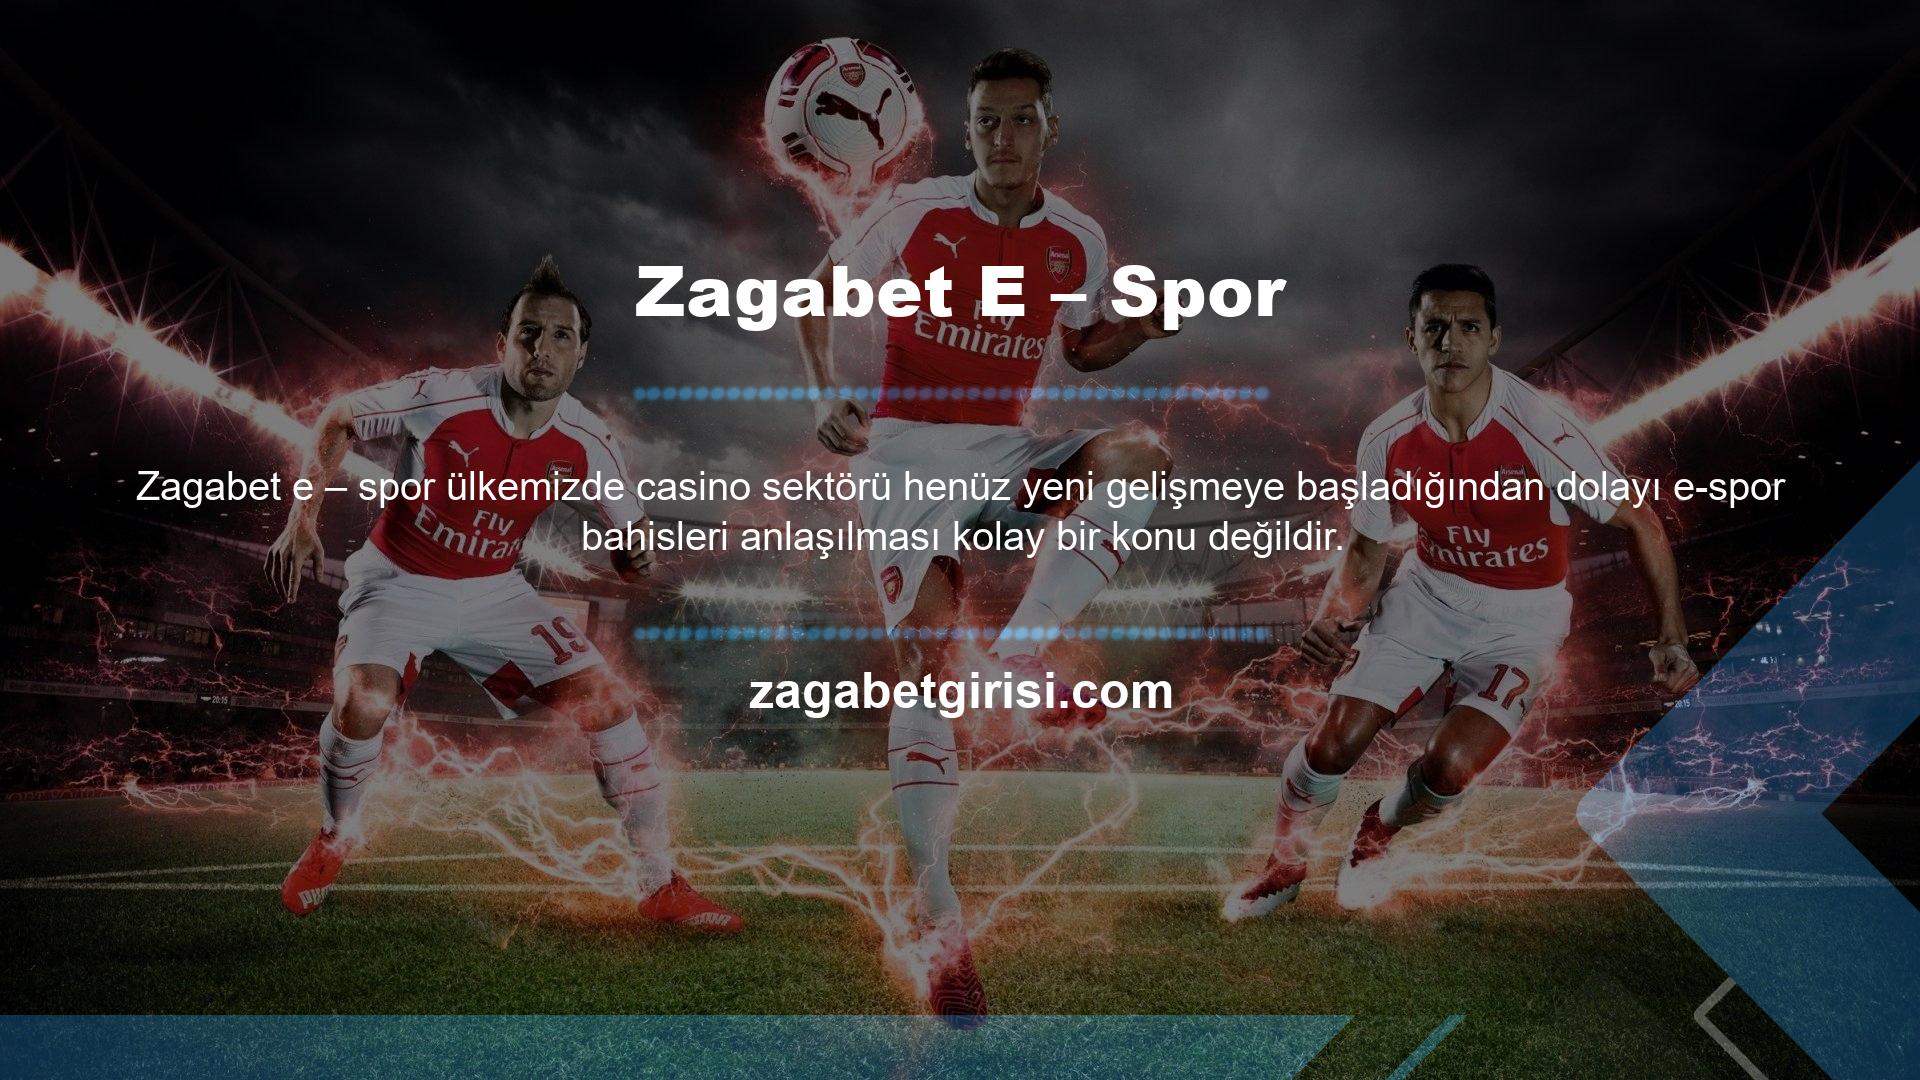 Şüpheli bahis meraklılarının sorularını yanıtlamak için Zagabet E-sports oyununun detaylarını açıklayacağız